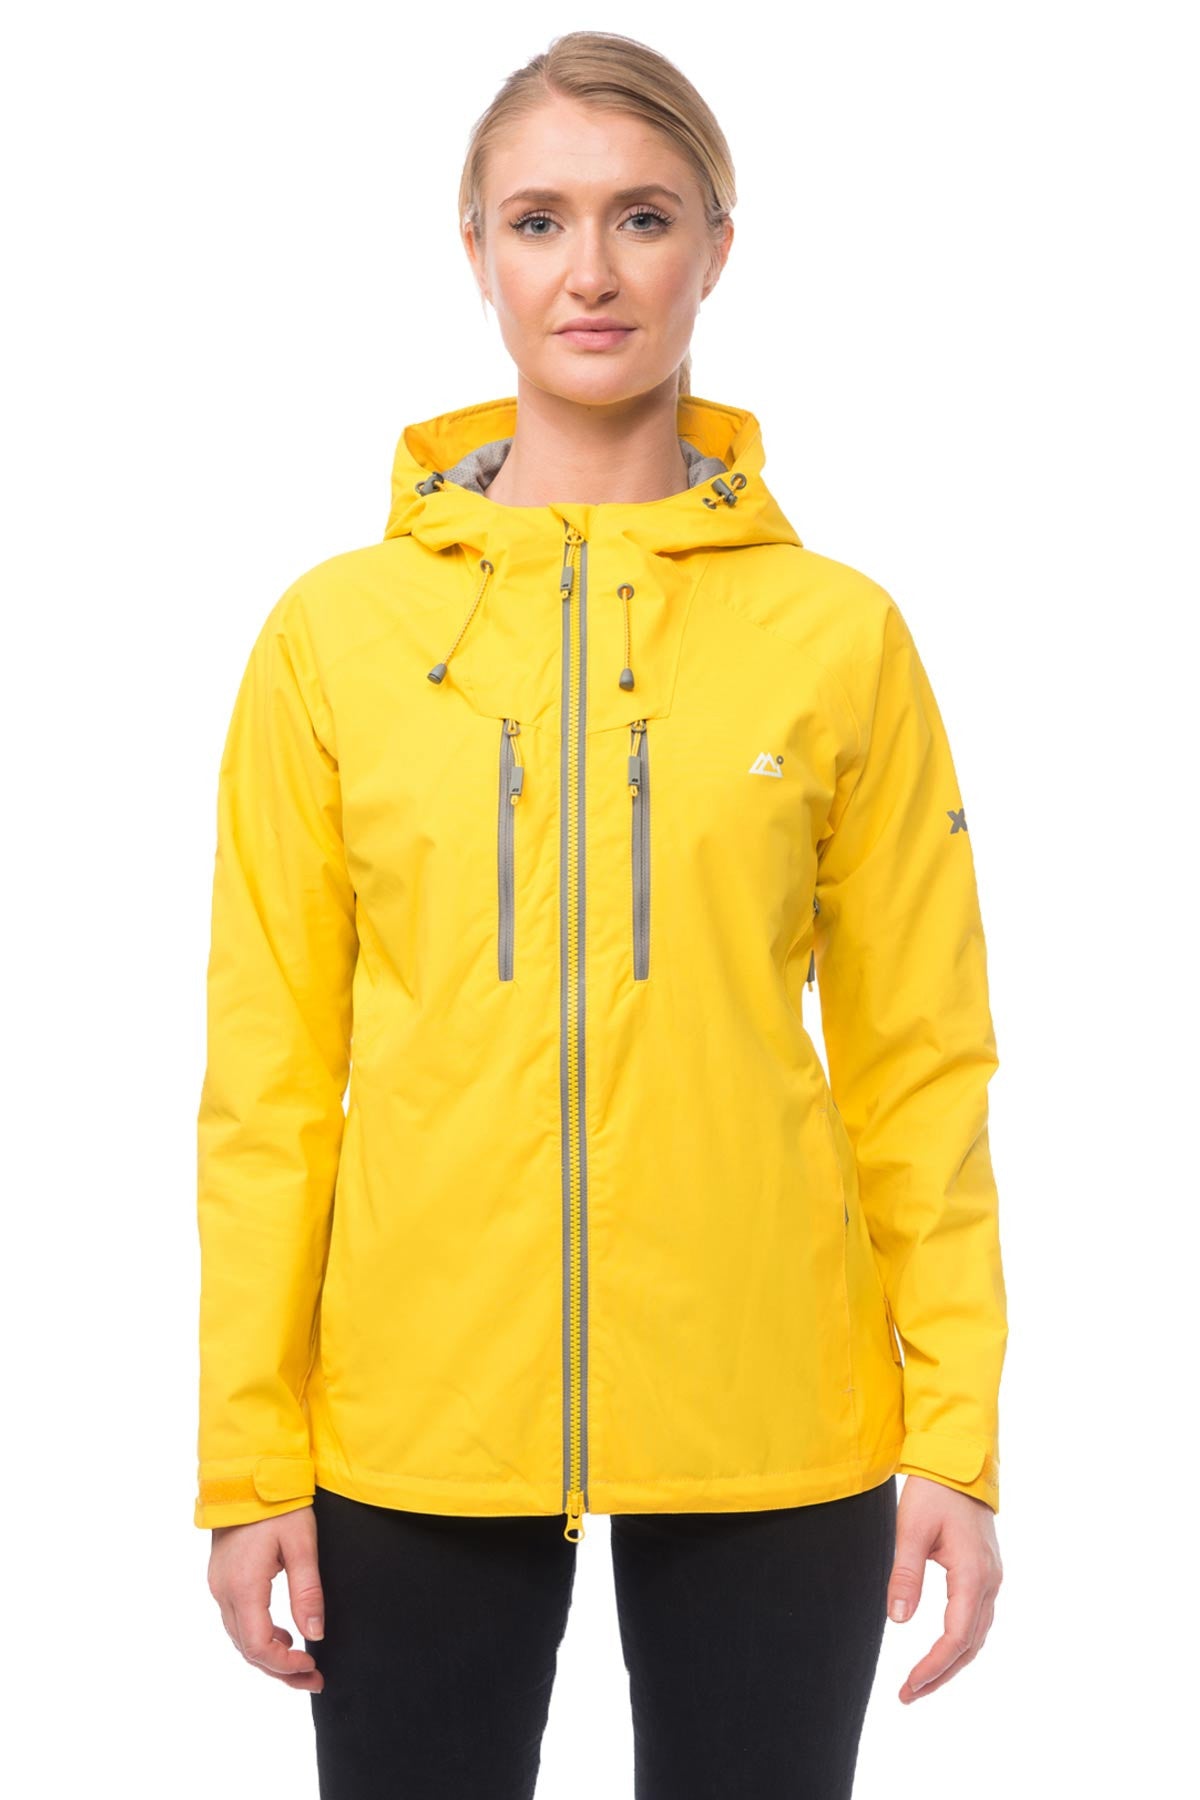 waterproof jacket target